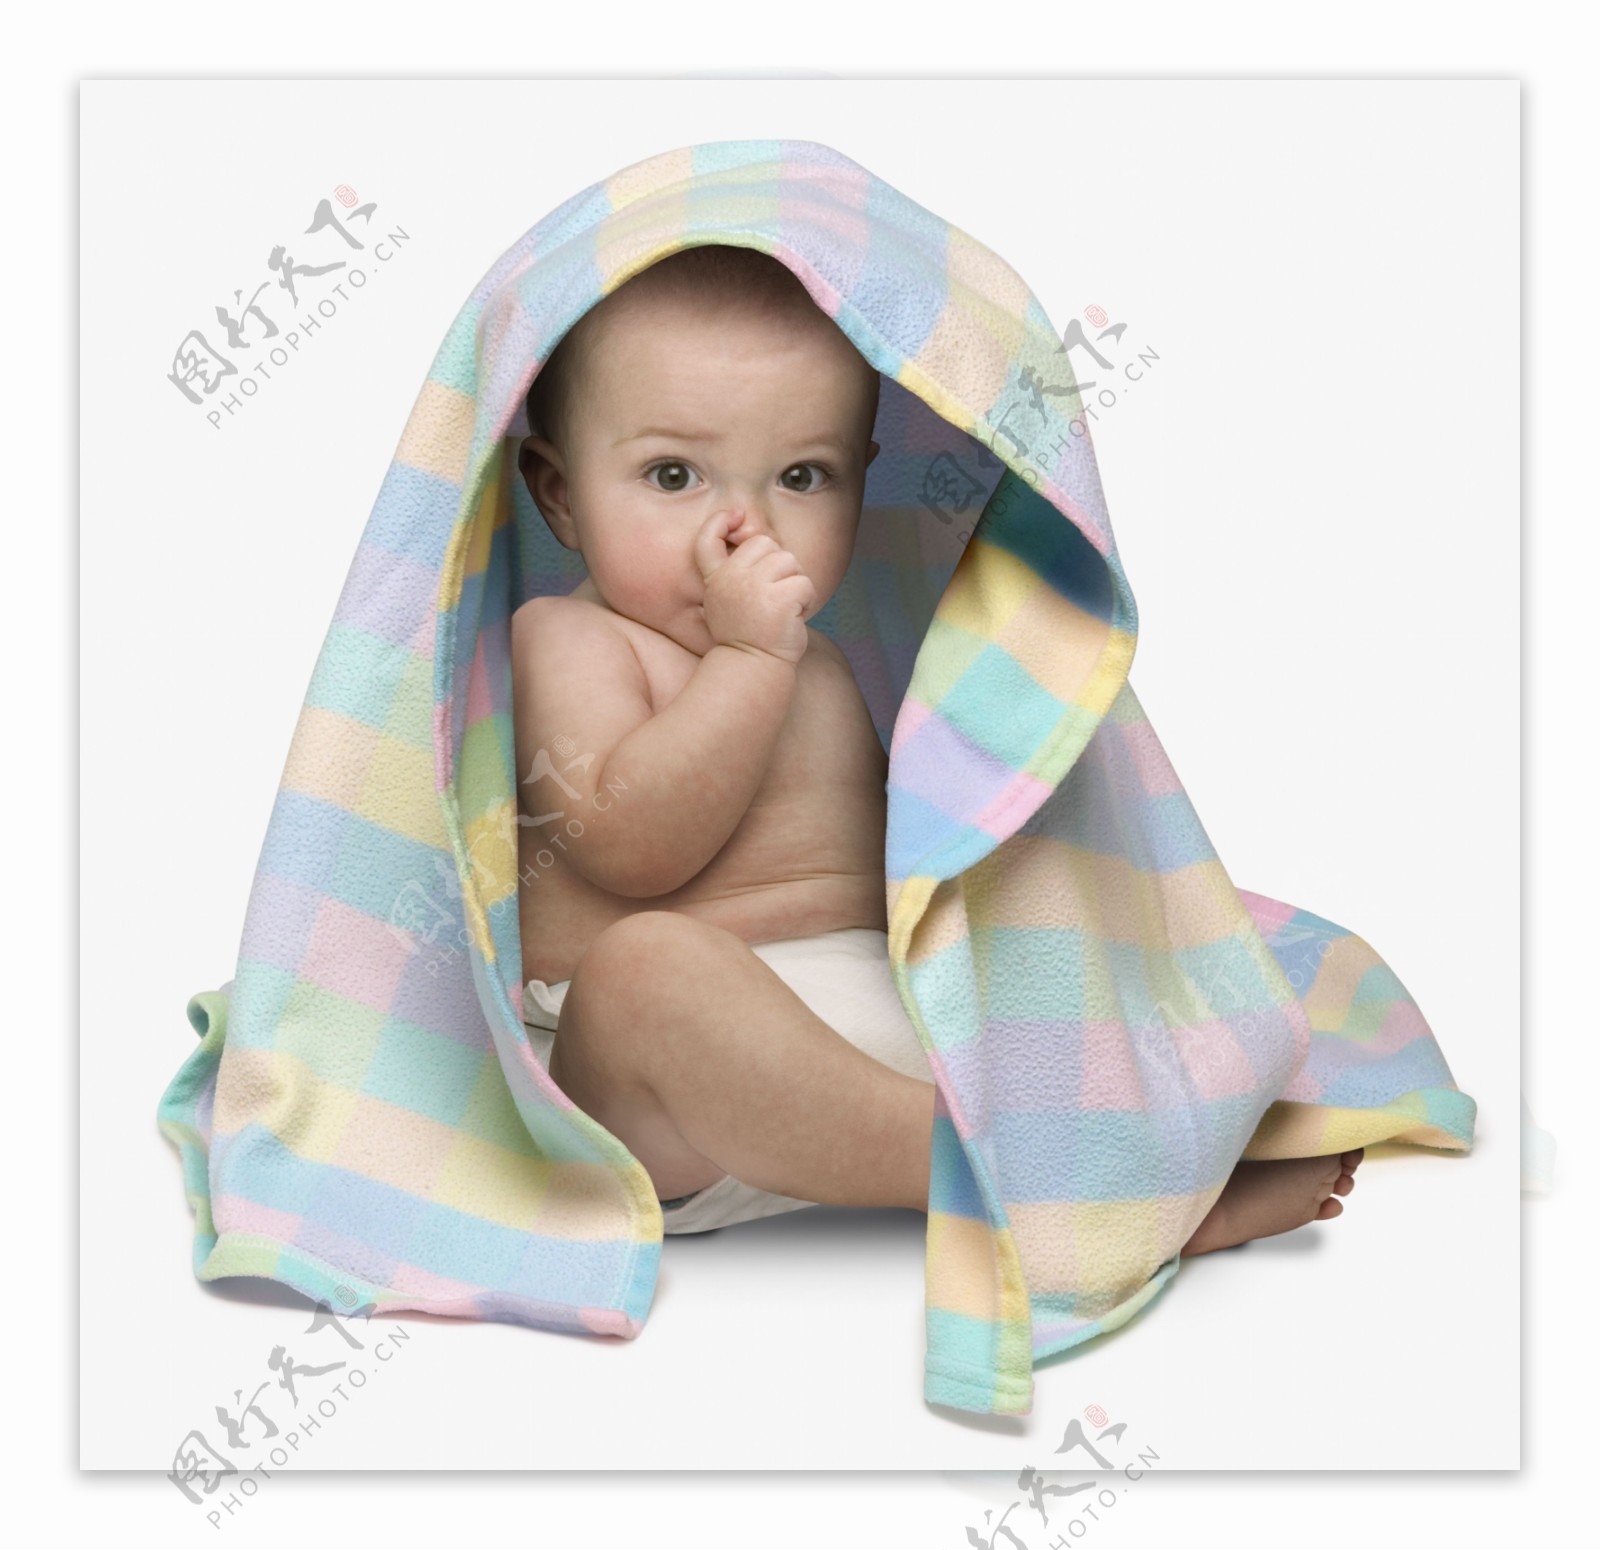 浴巾包着的宝宝婴儿图片